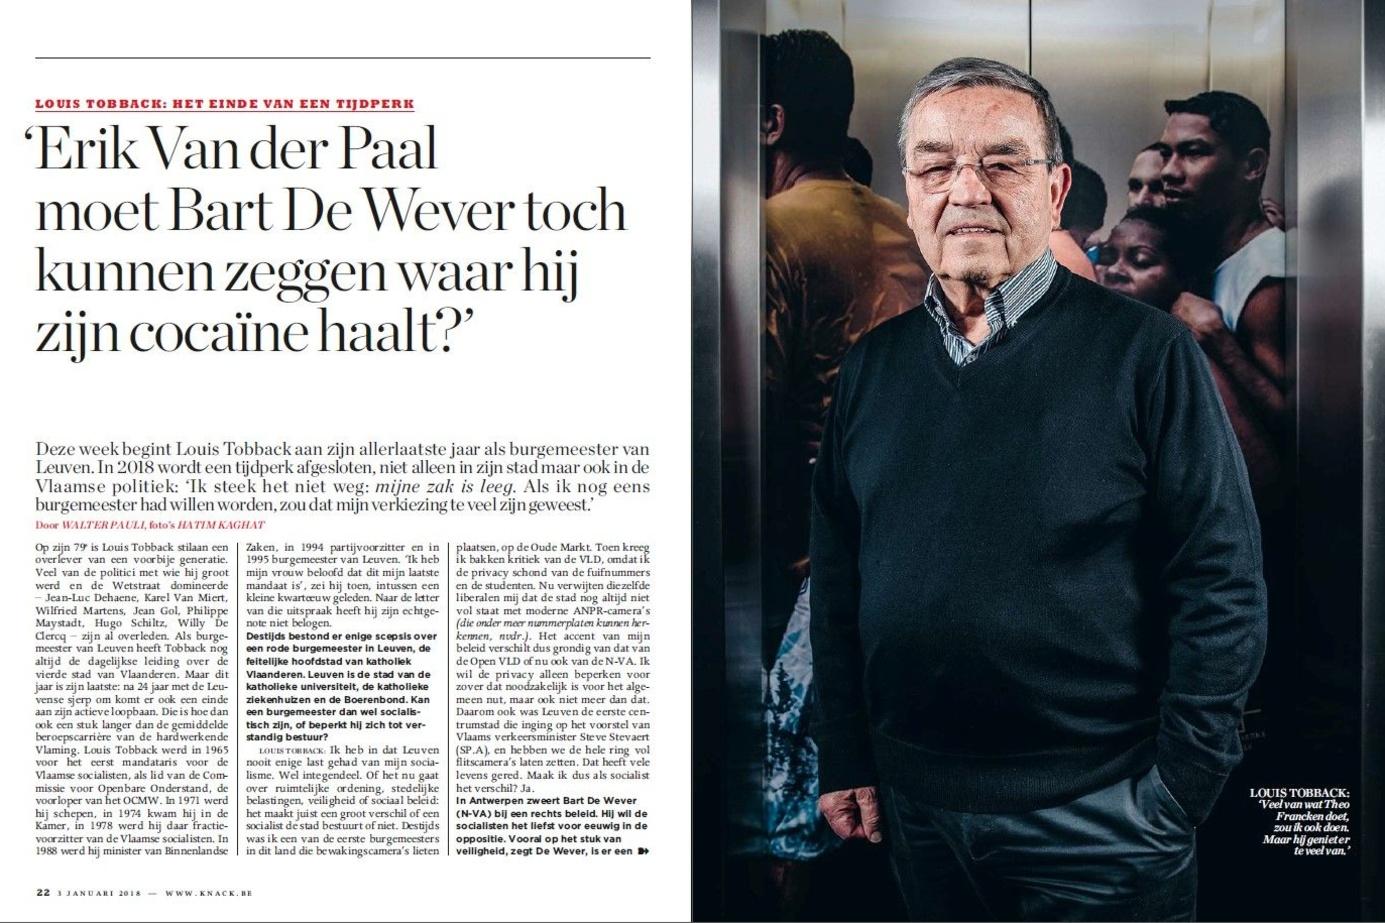 En janvier 2018, dans une interview à Knack, Louis Tobback (sp.a) attaque Bart De Wever et Erik Van der Paal à propos du trafic de cocaïne.